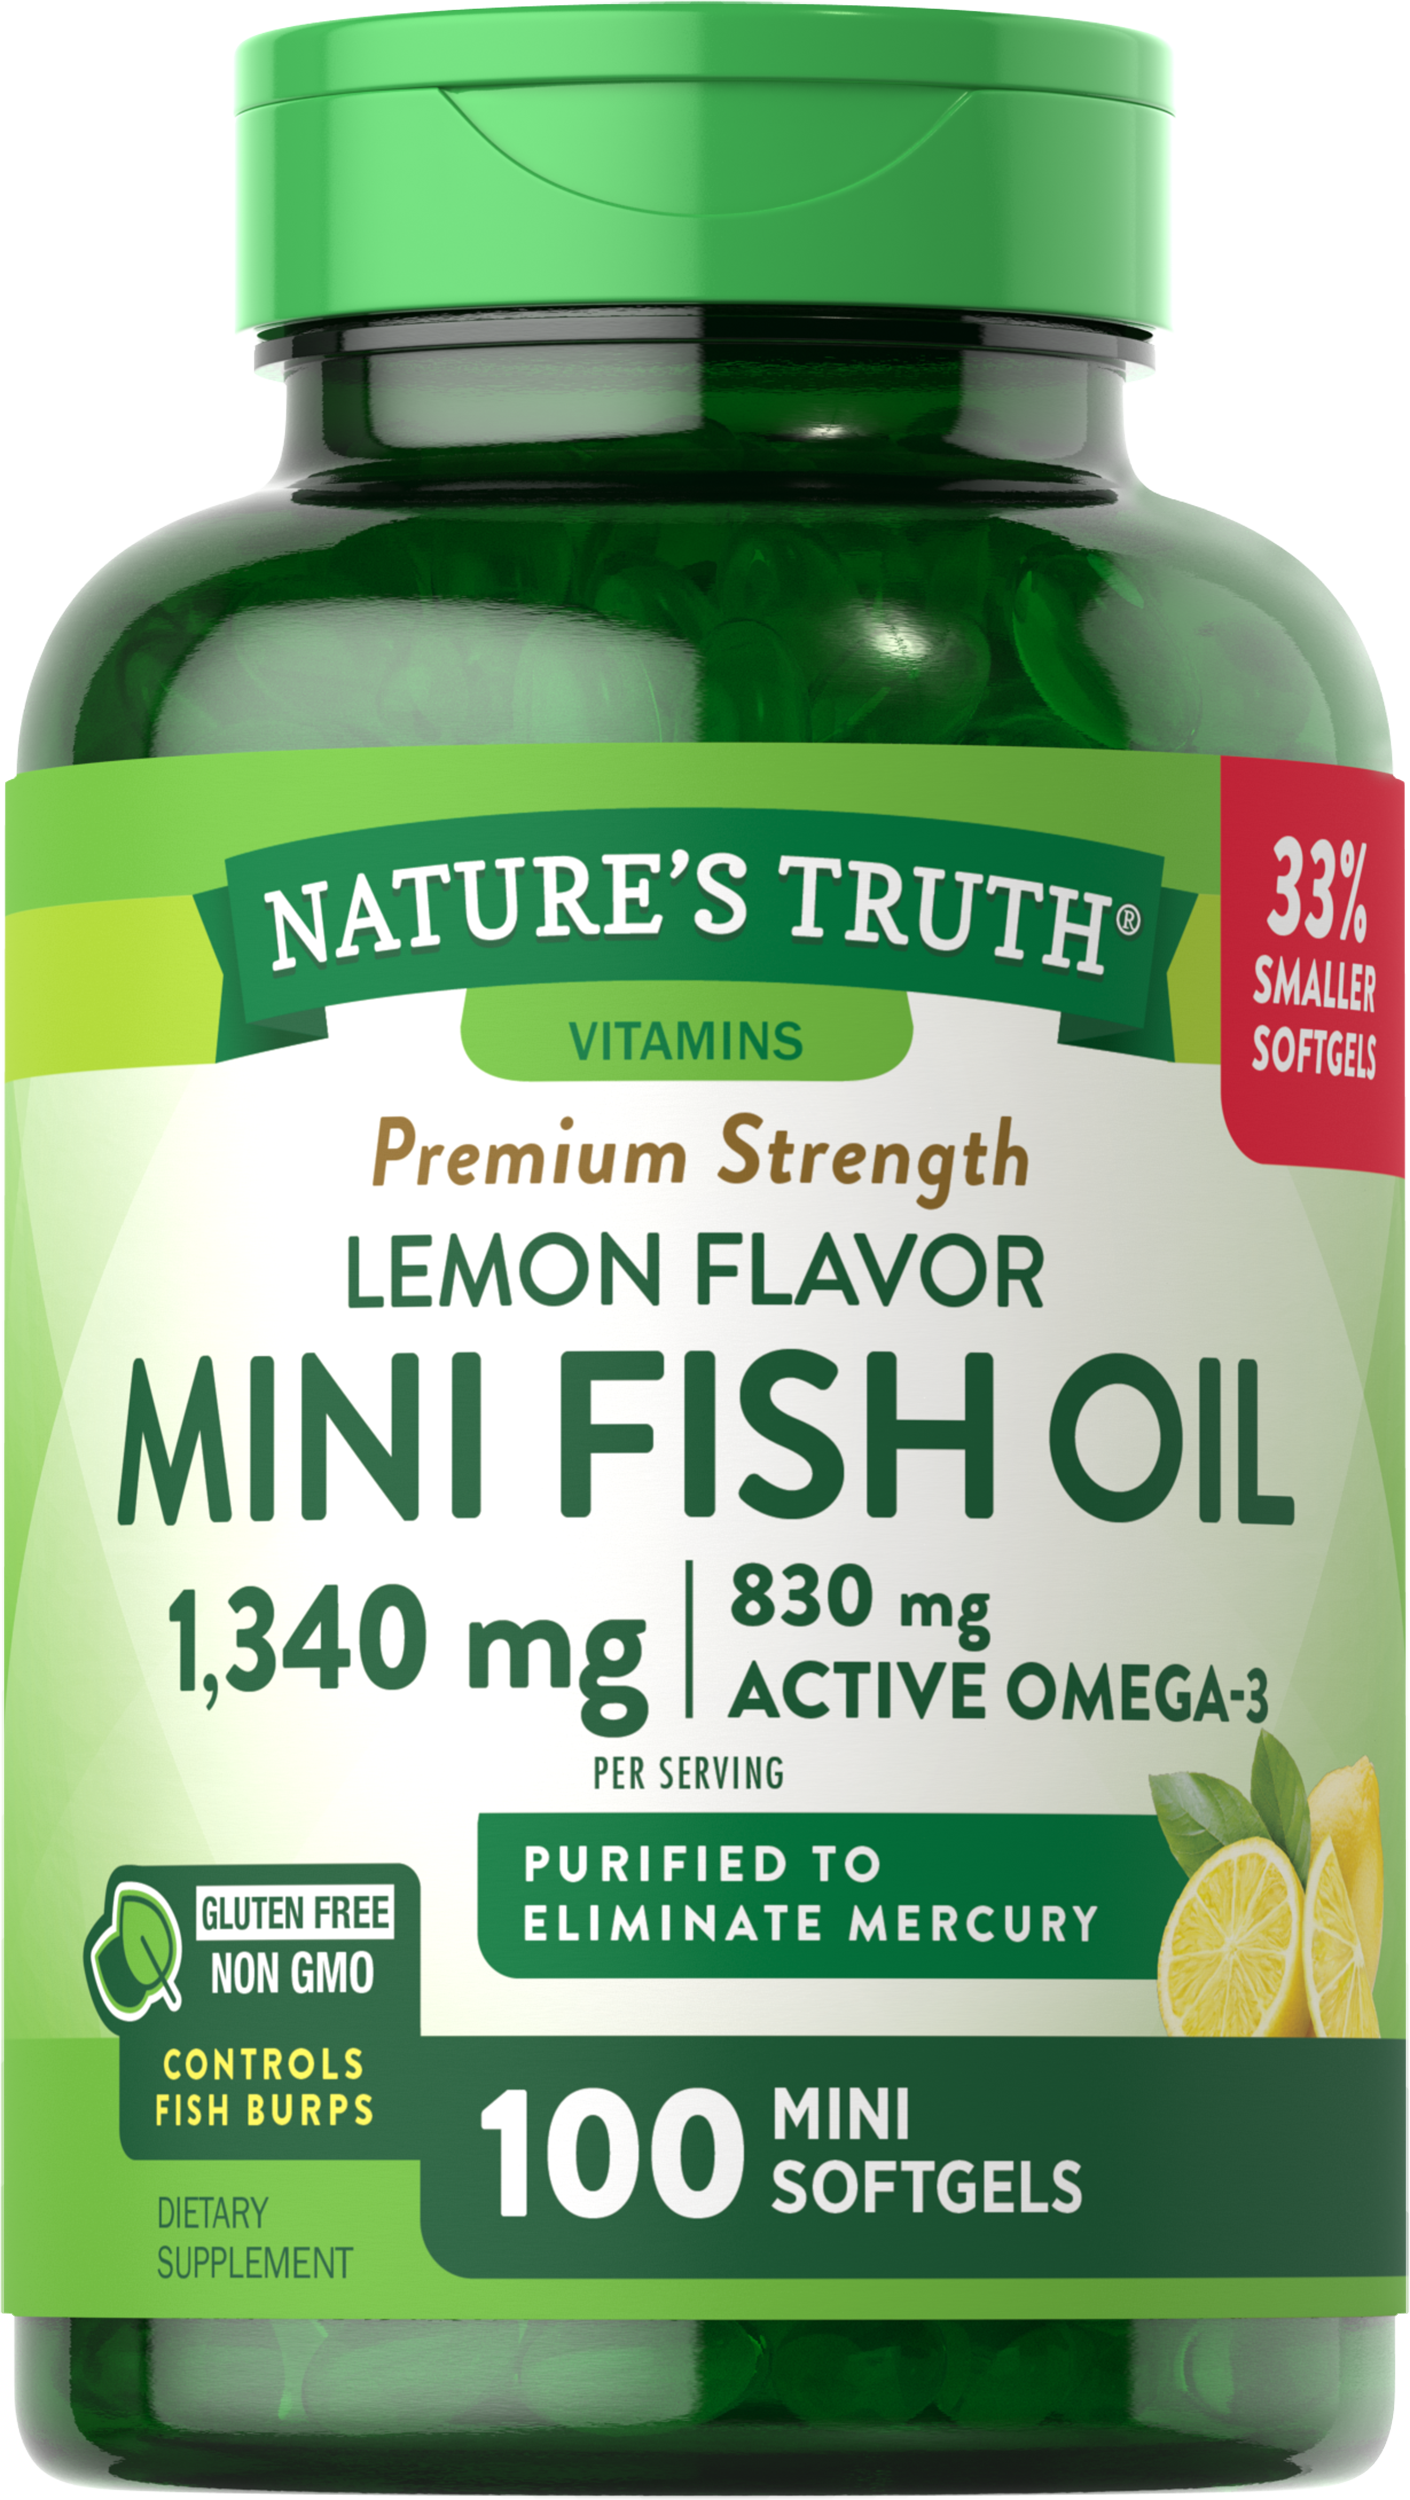 Mini Omega 3 Fish Oil 1300 mg | Lemon Flavor